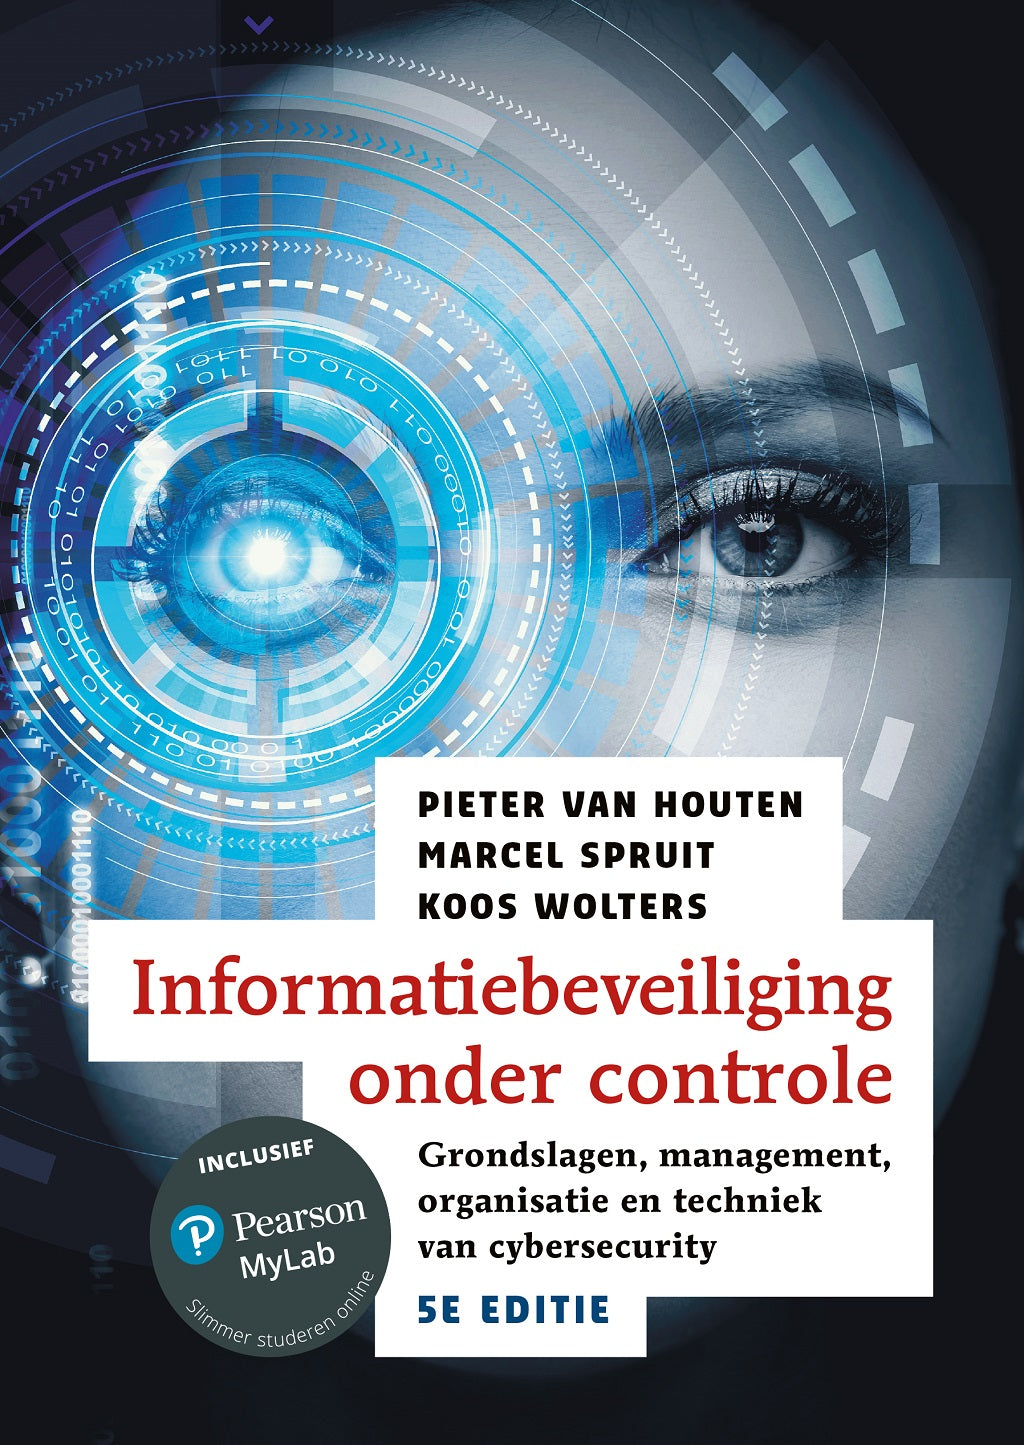 Informatiebeveiliging onder controle, 5e editie (Digitaal)